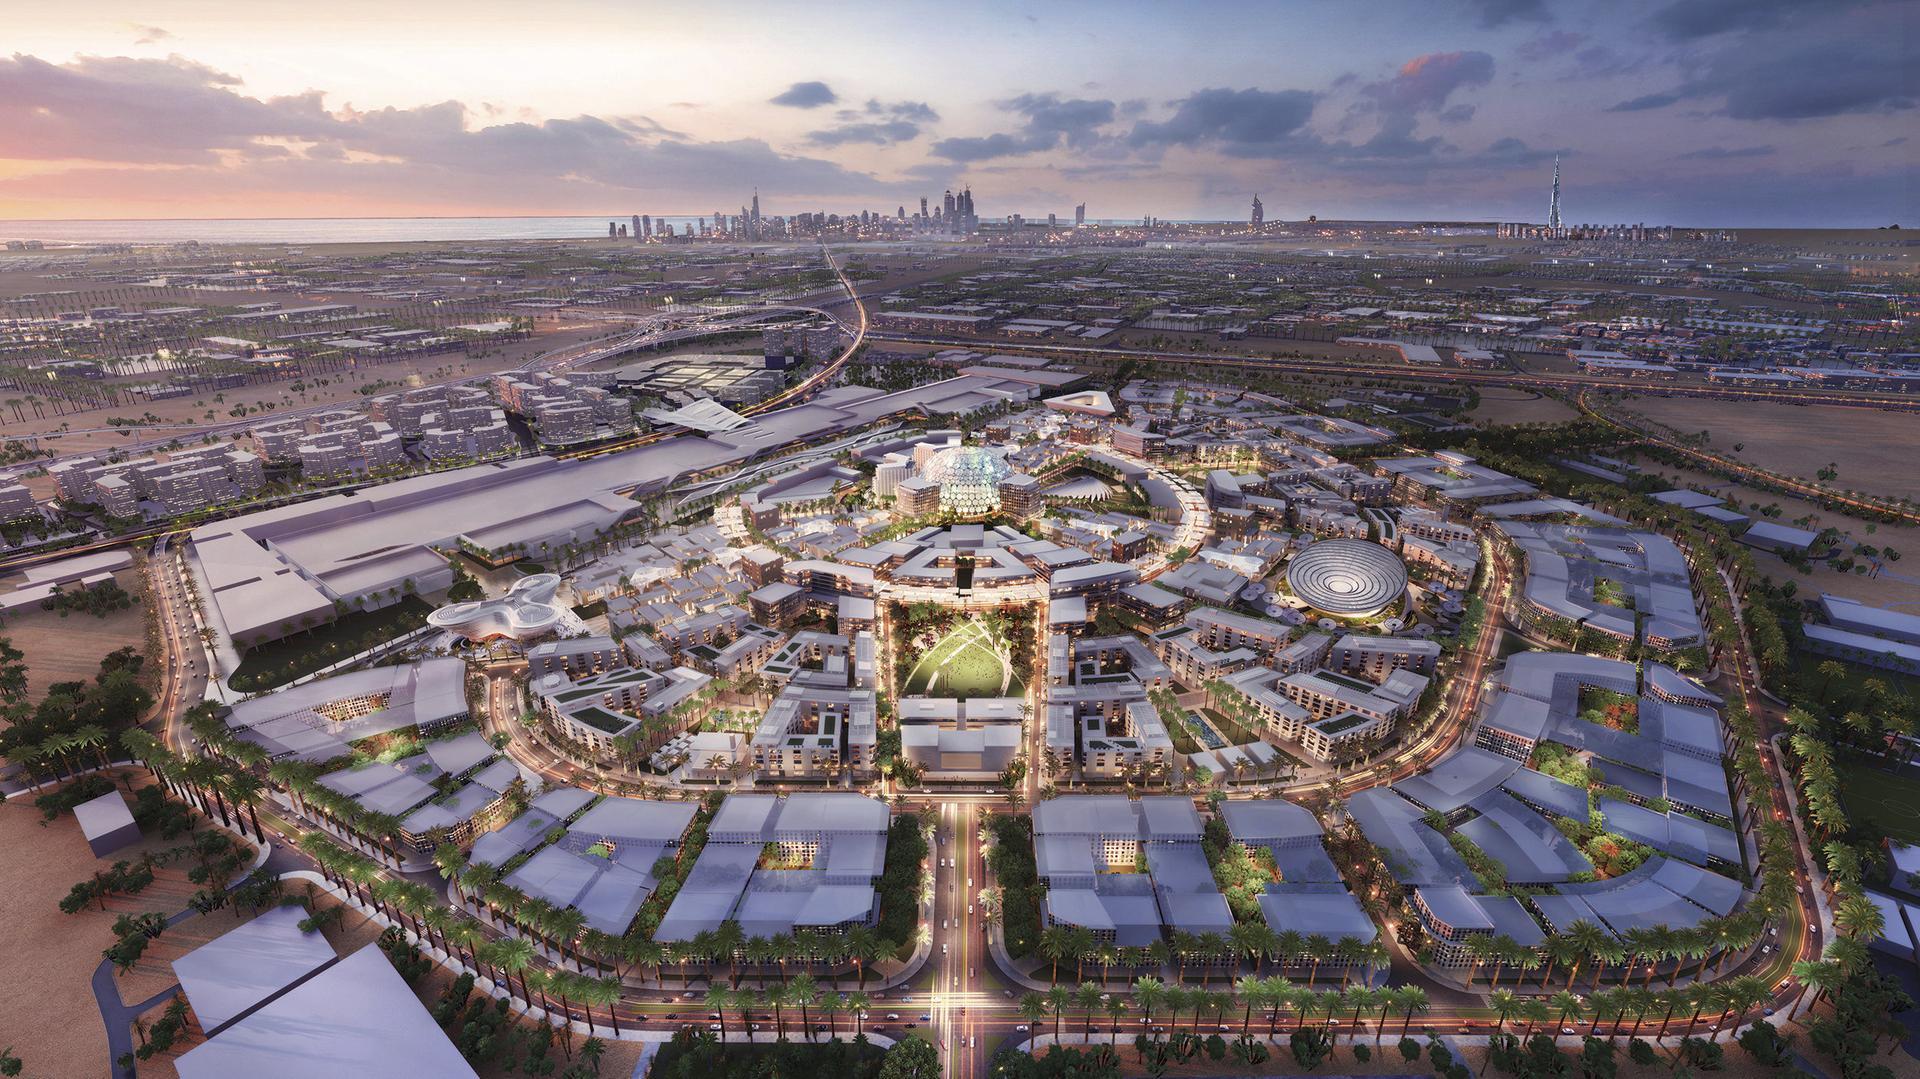 Expo 2020 Dubai — A Hopeful Vision for the Future